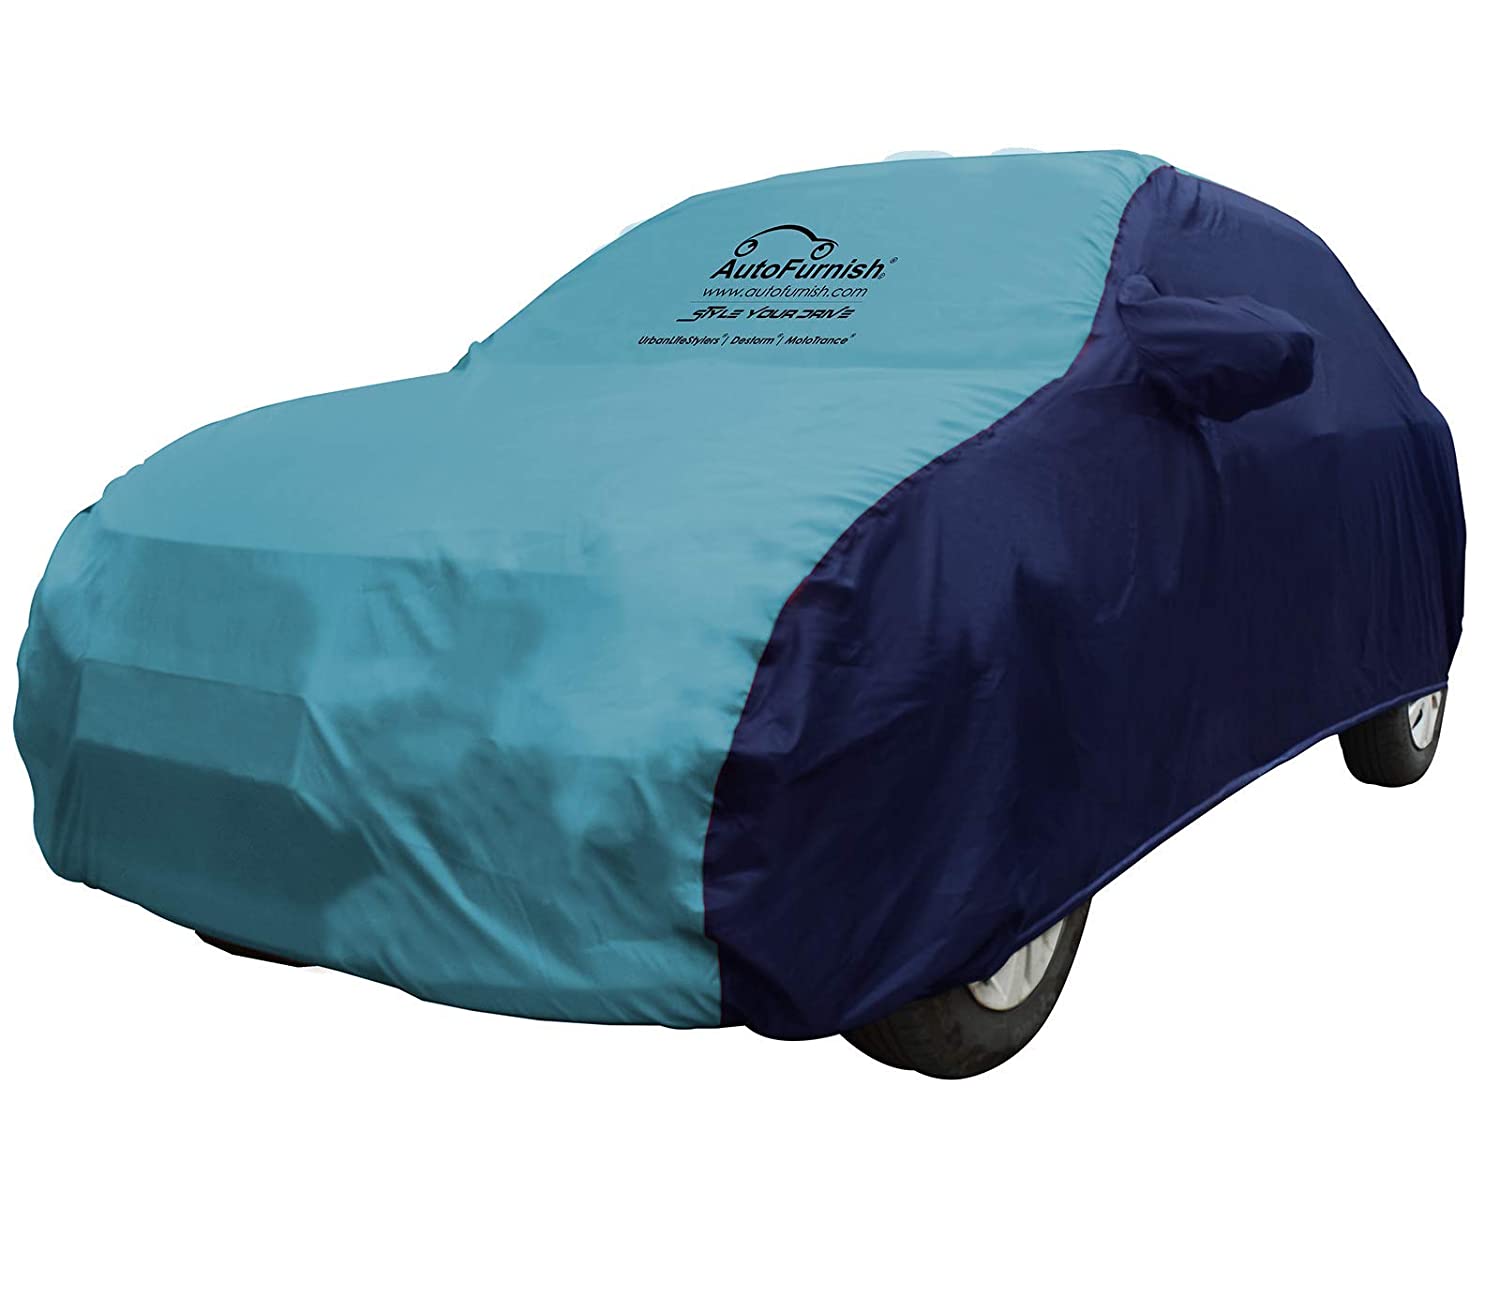 Fiat Punto Evo car cover, fiat Punto Evo car cover waterproof car